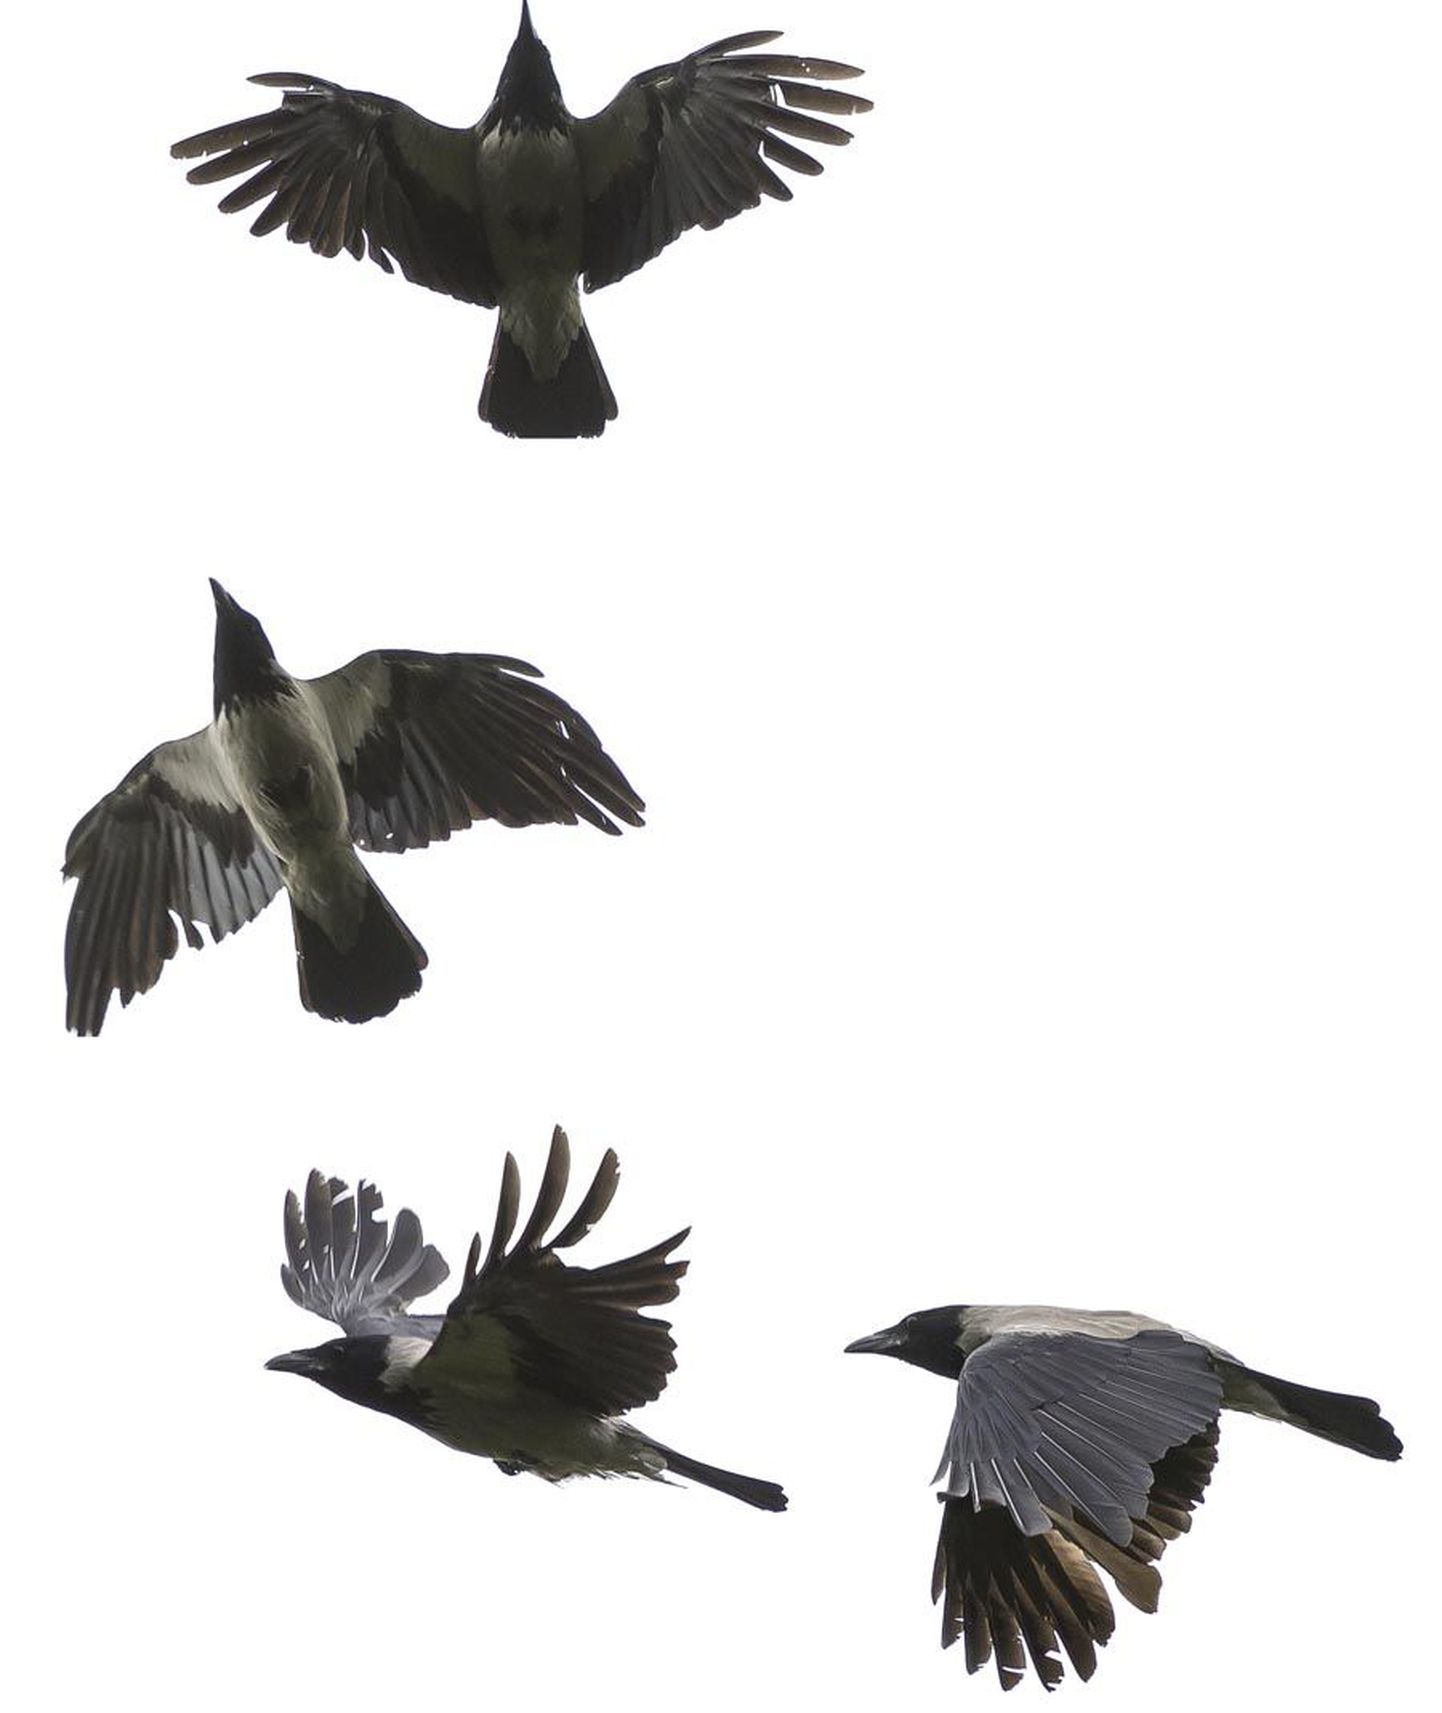 Piltlikult väljendudes suudavad linnud iga oma sulge eraldi liigutada ja selle asendit kontrollida.